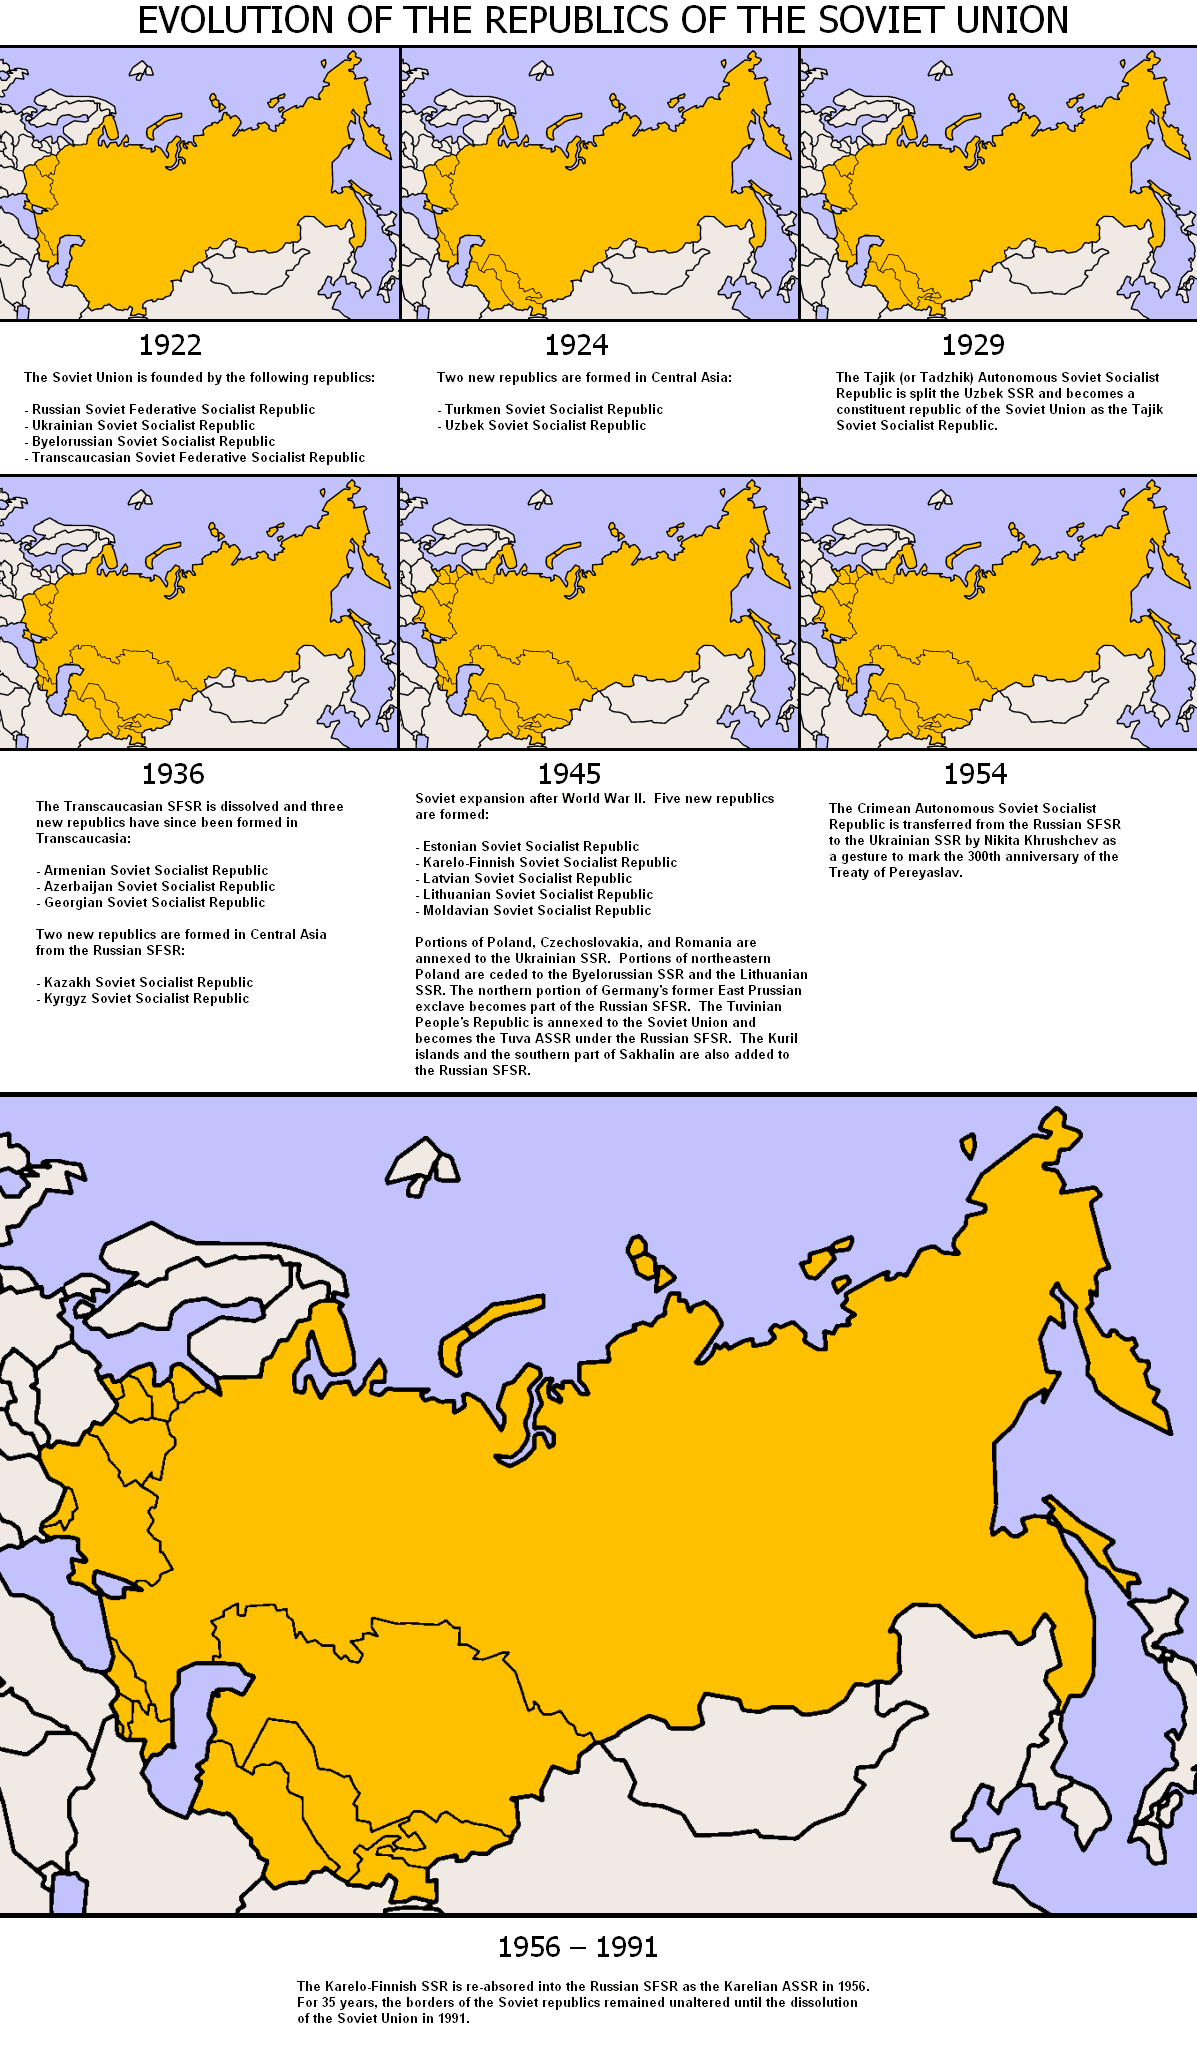 Sovietevolution